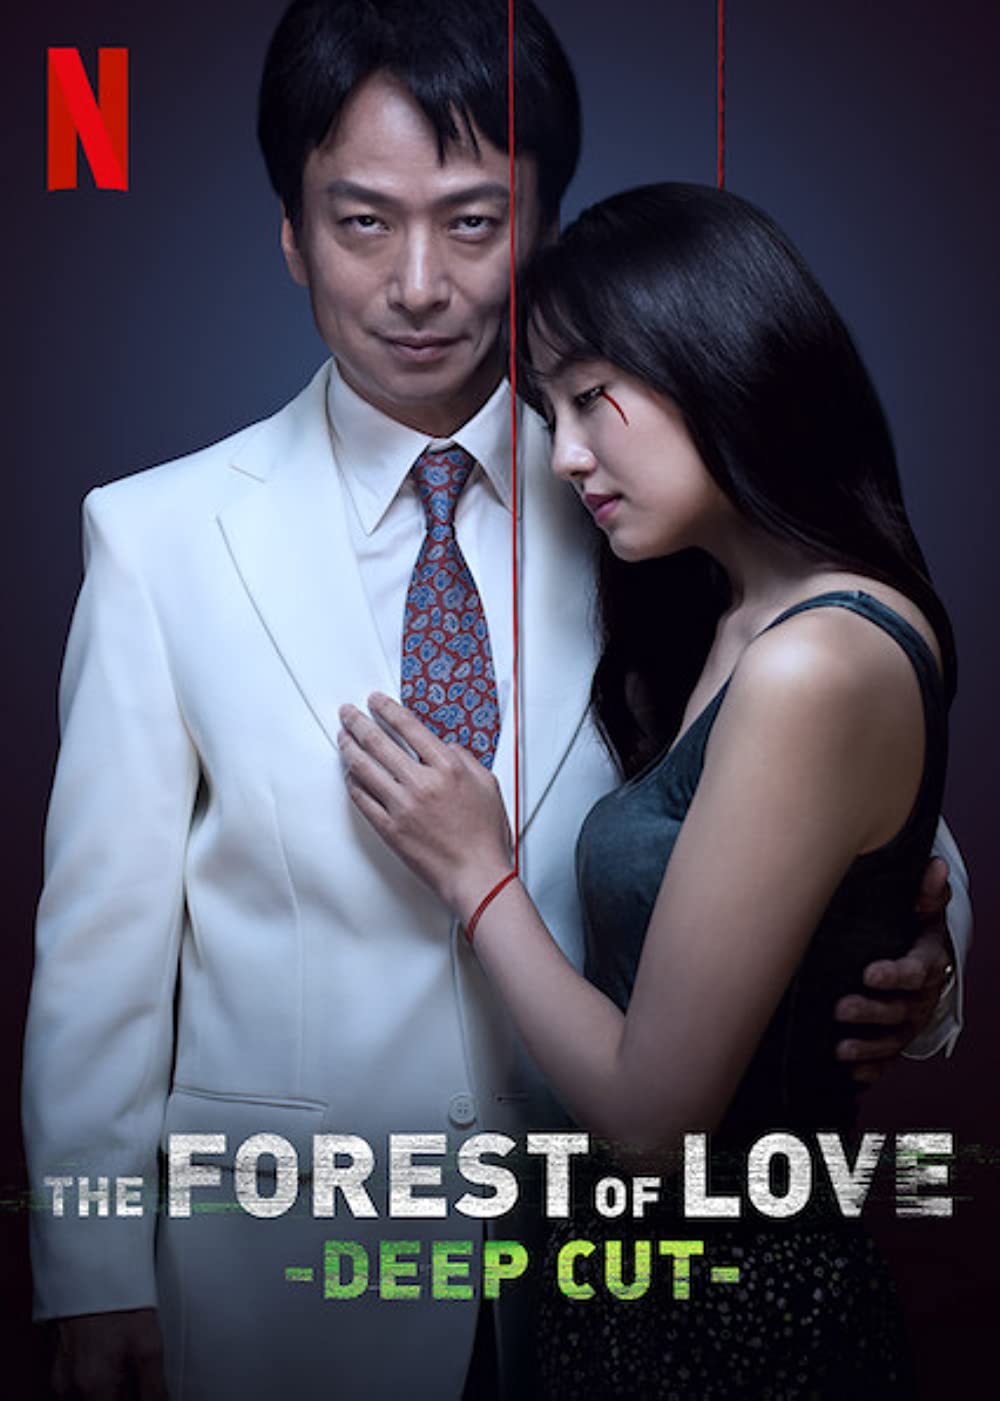 Filmbeschreibung zu The Forest of Love: Deep Cut